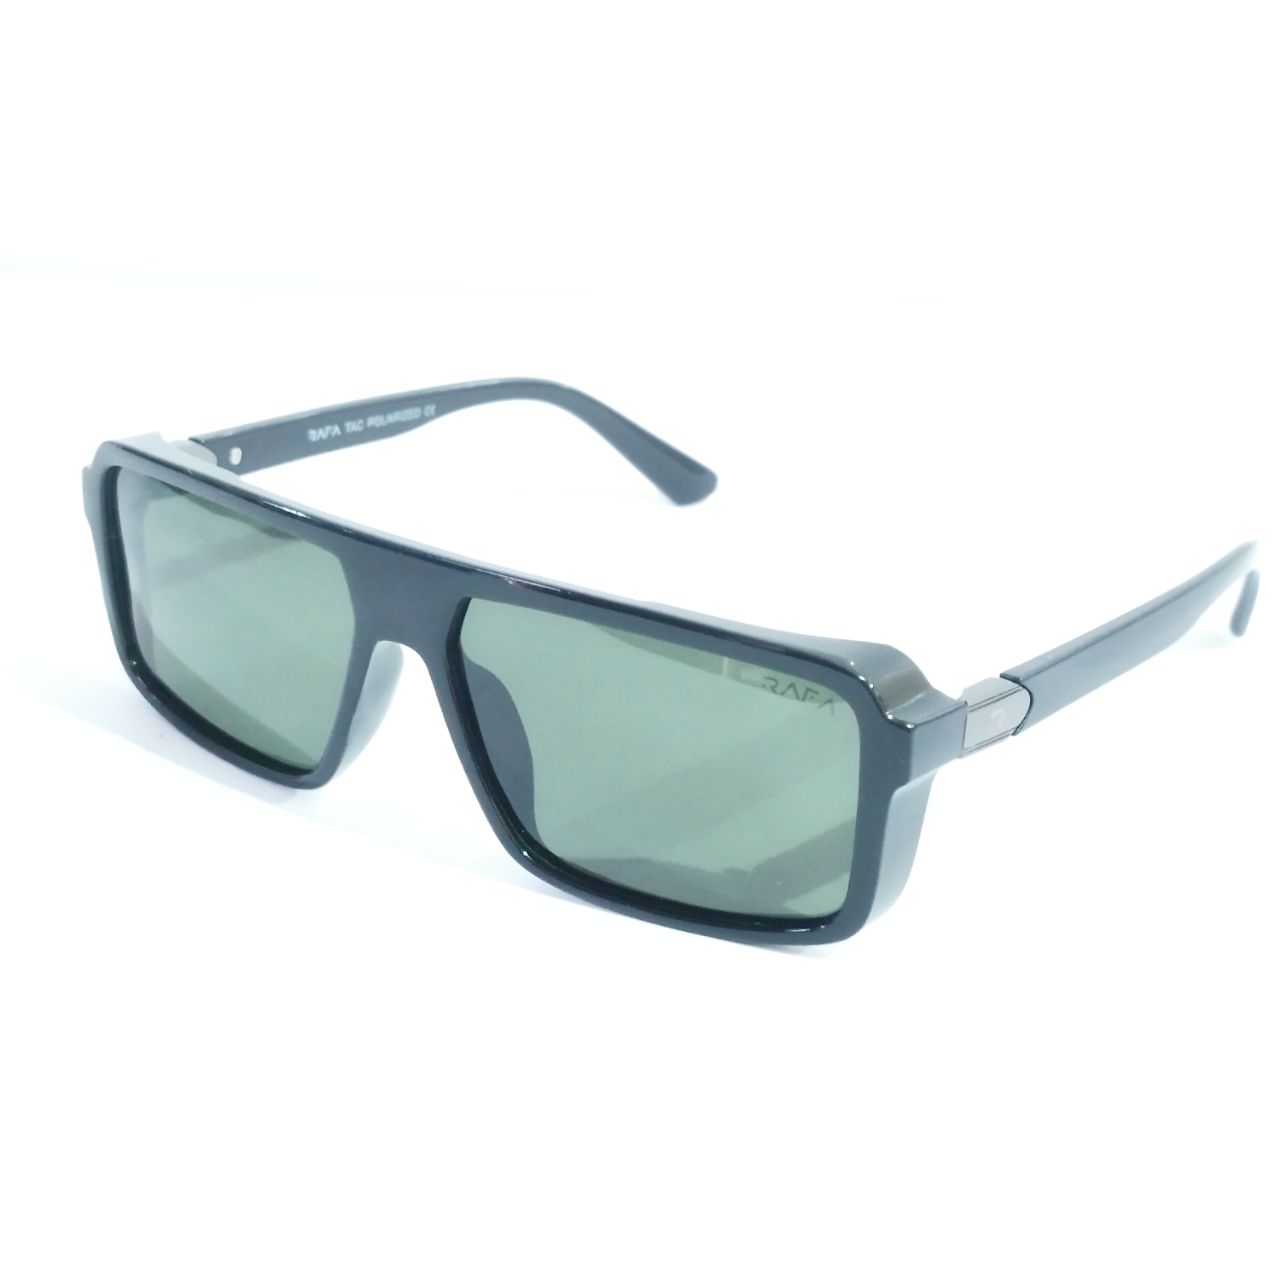 Black Frame Green Lens Polarized Sunglasses for Men and Women